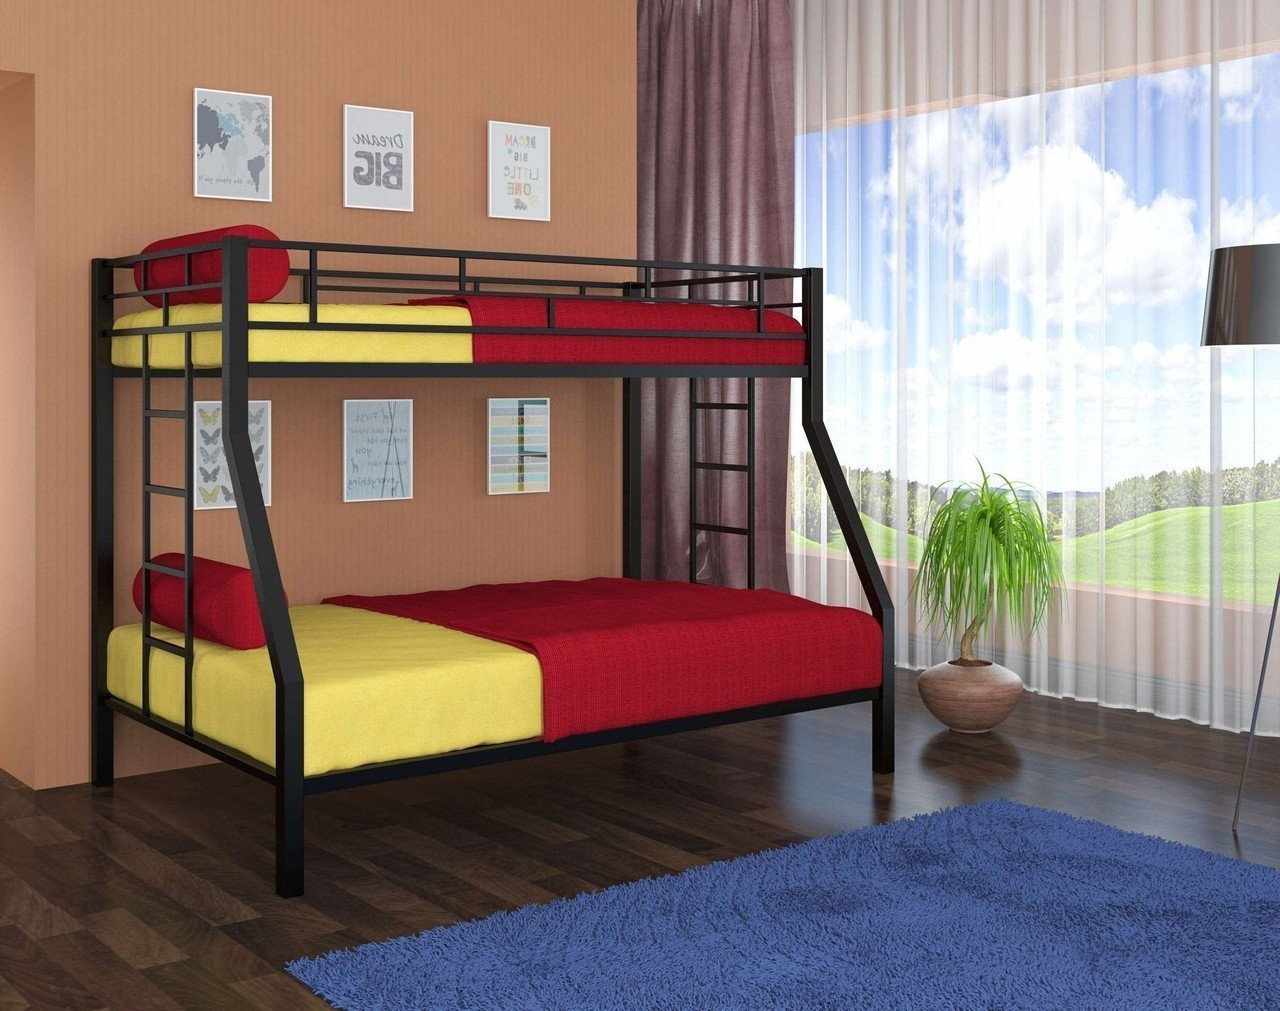 Желто-красное постельное белье на двухъярусной кровати 